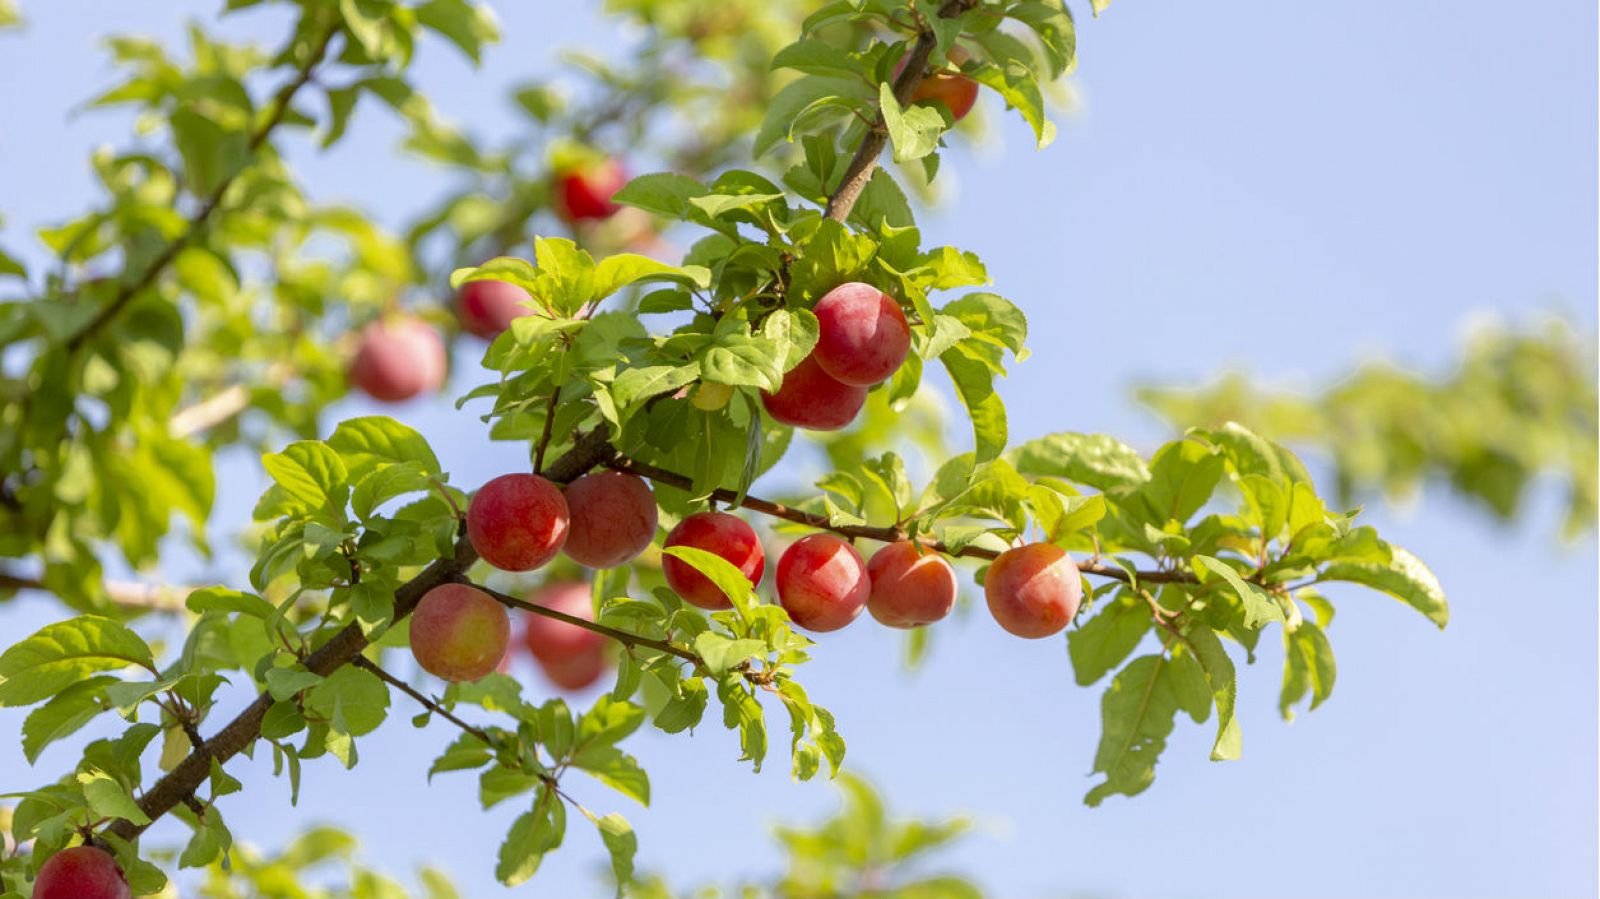 Un joven pretende implantar árboles con 40 tipos de frutas diferentes en huertos urbanos - RTVE.es